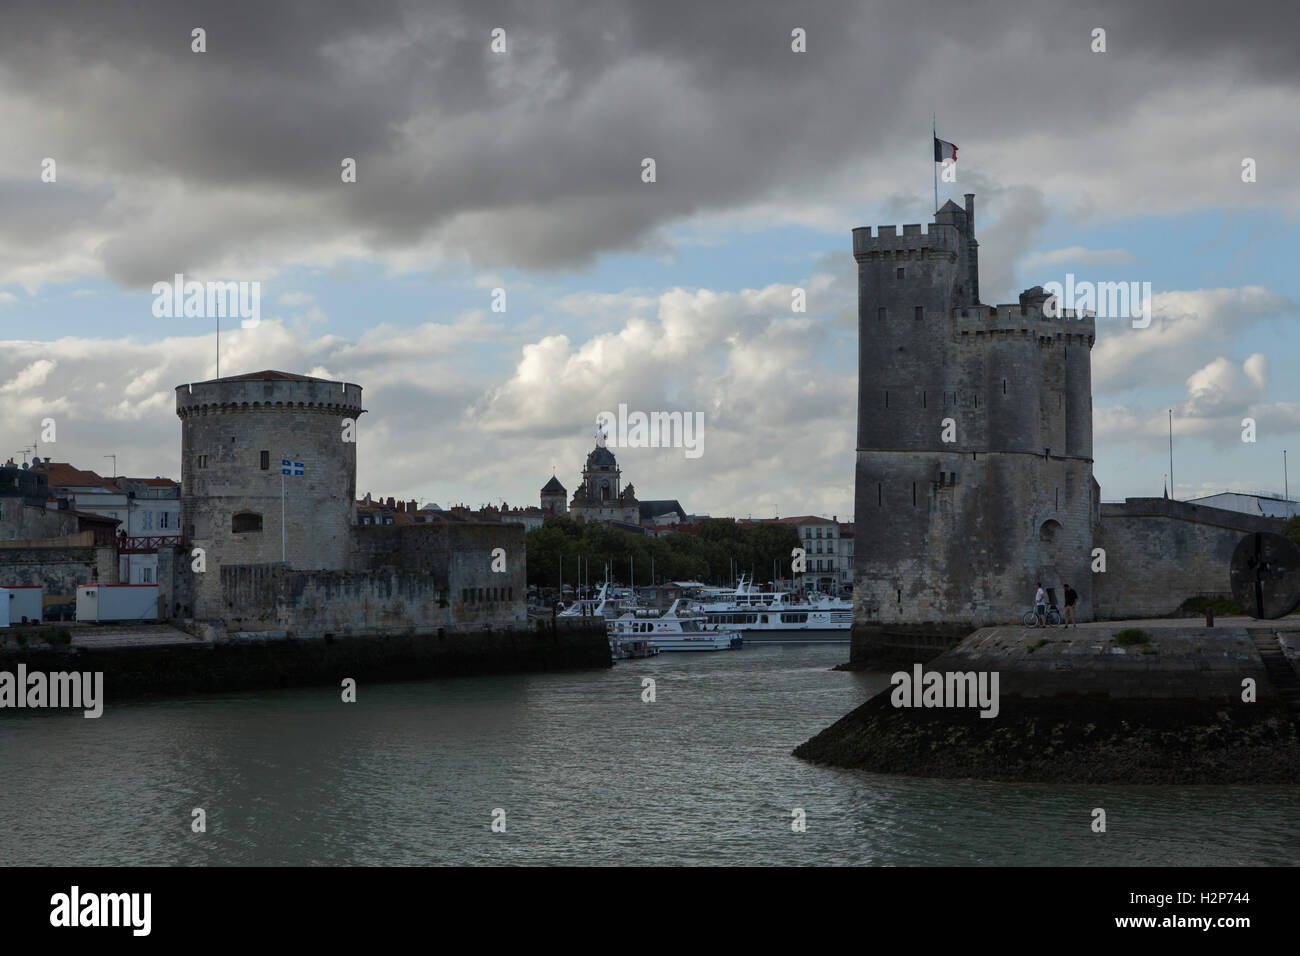 Tour Saint-Nicolas (R) and Tour de la Chaine (L) in the Old Harbour (Vieux Port) in La Rochelle, France. Stock Photo